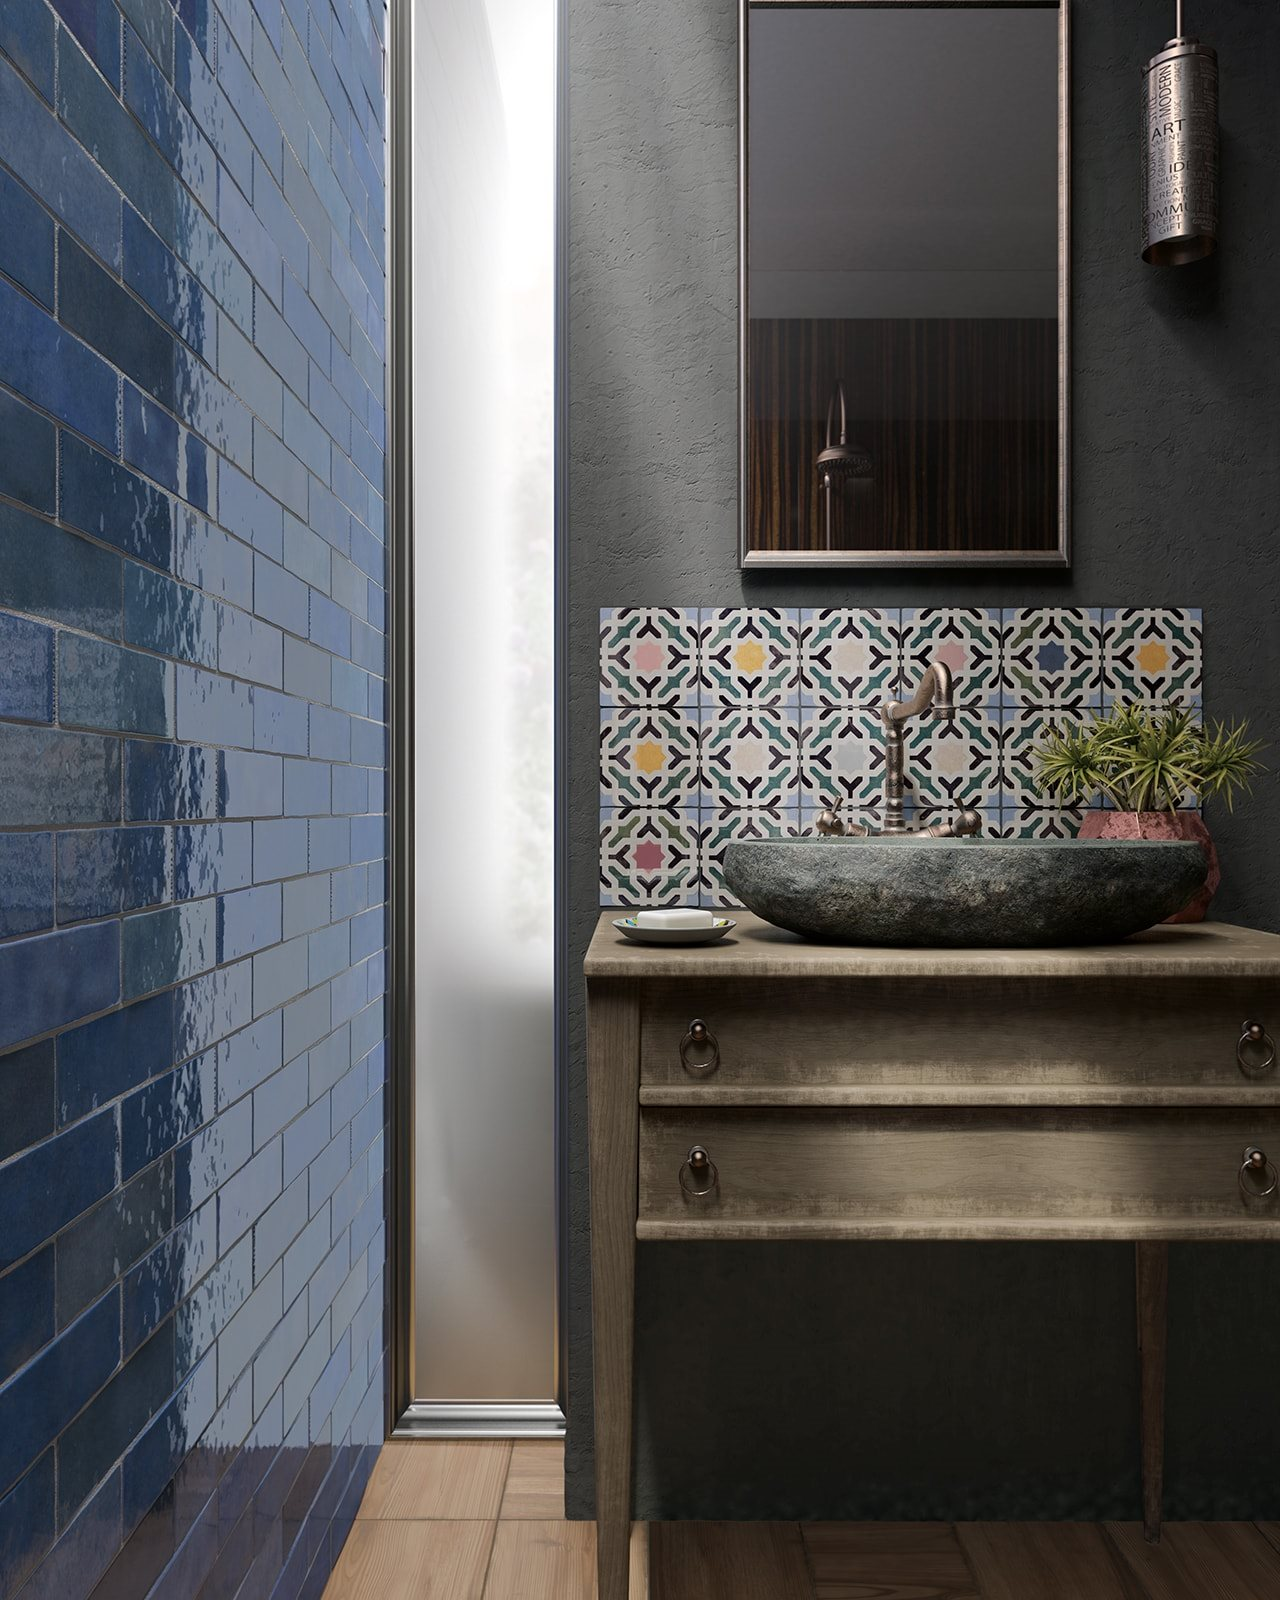 Carrelage Zellige bleu varié 6,5X20 dans une salle de bain aux murs gris avec vasque sur meuble en bois